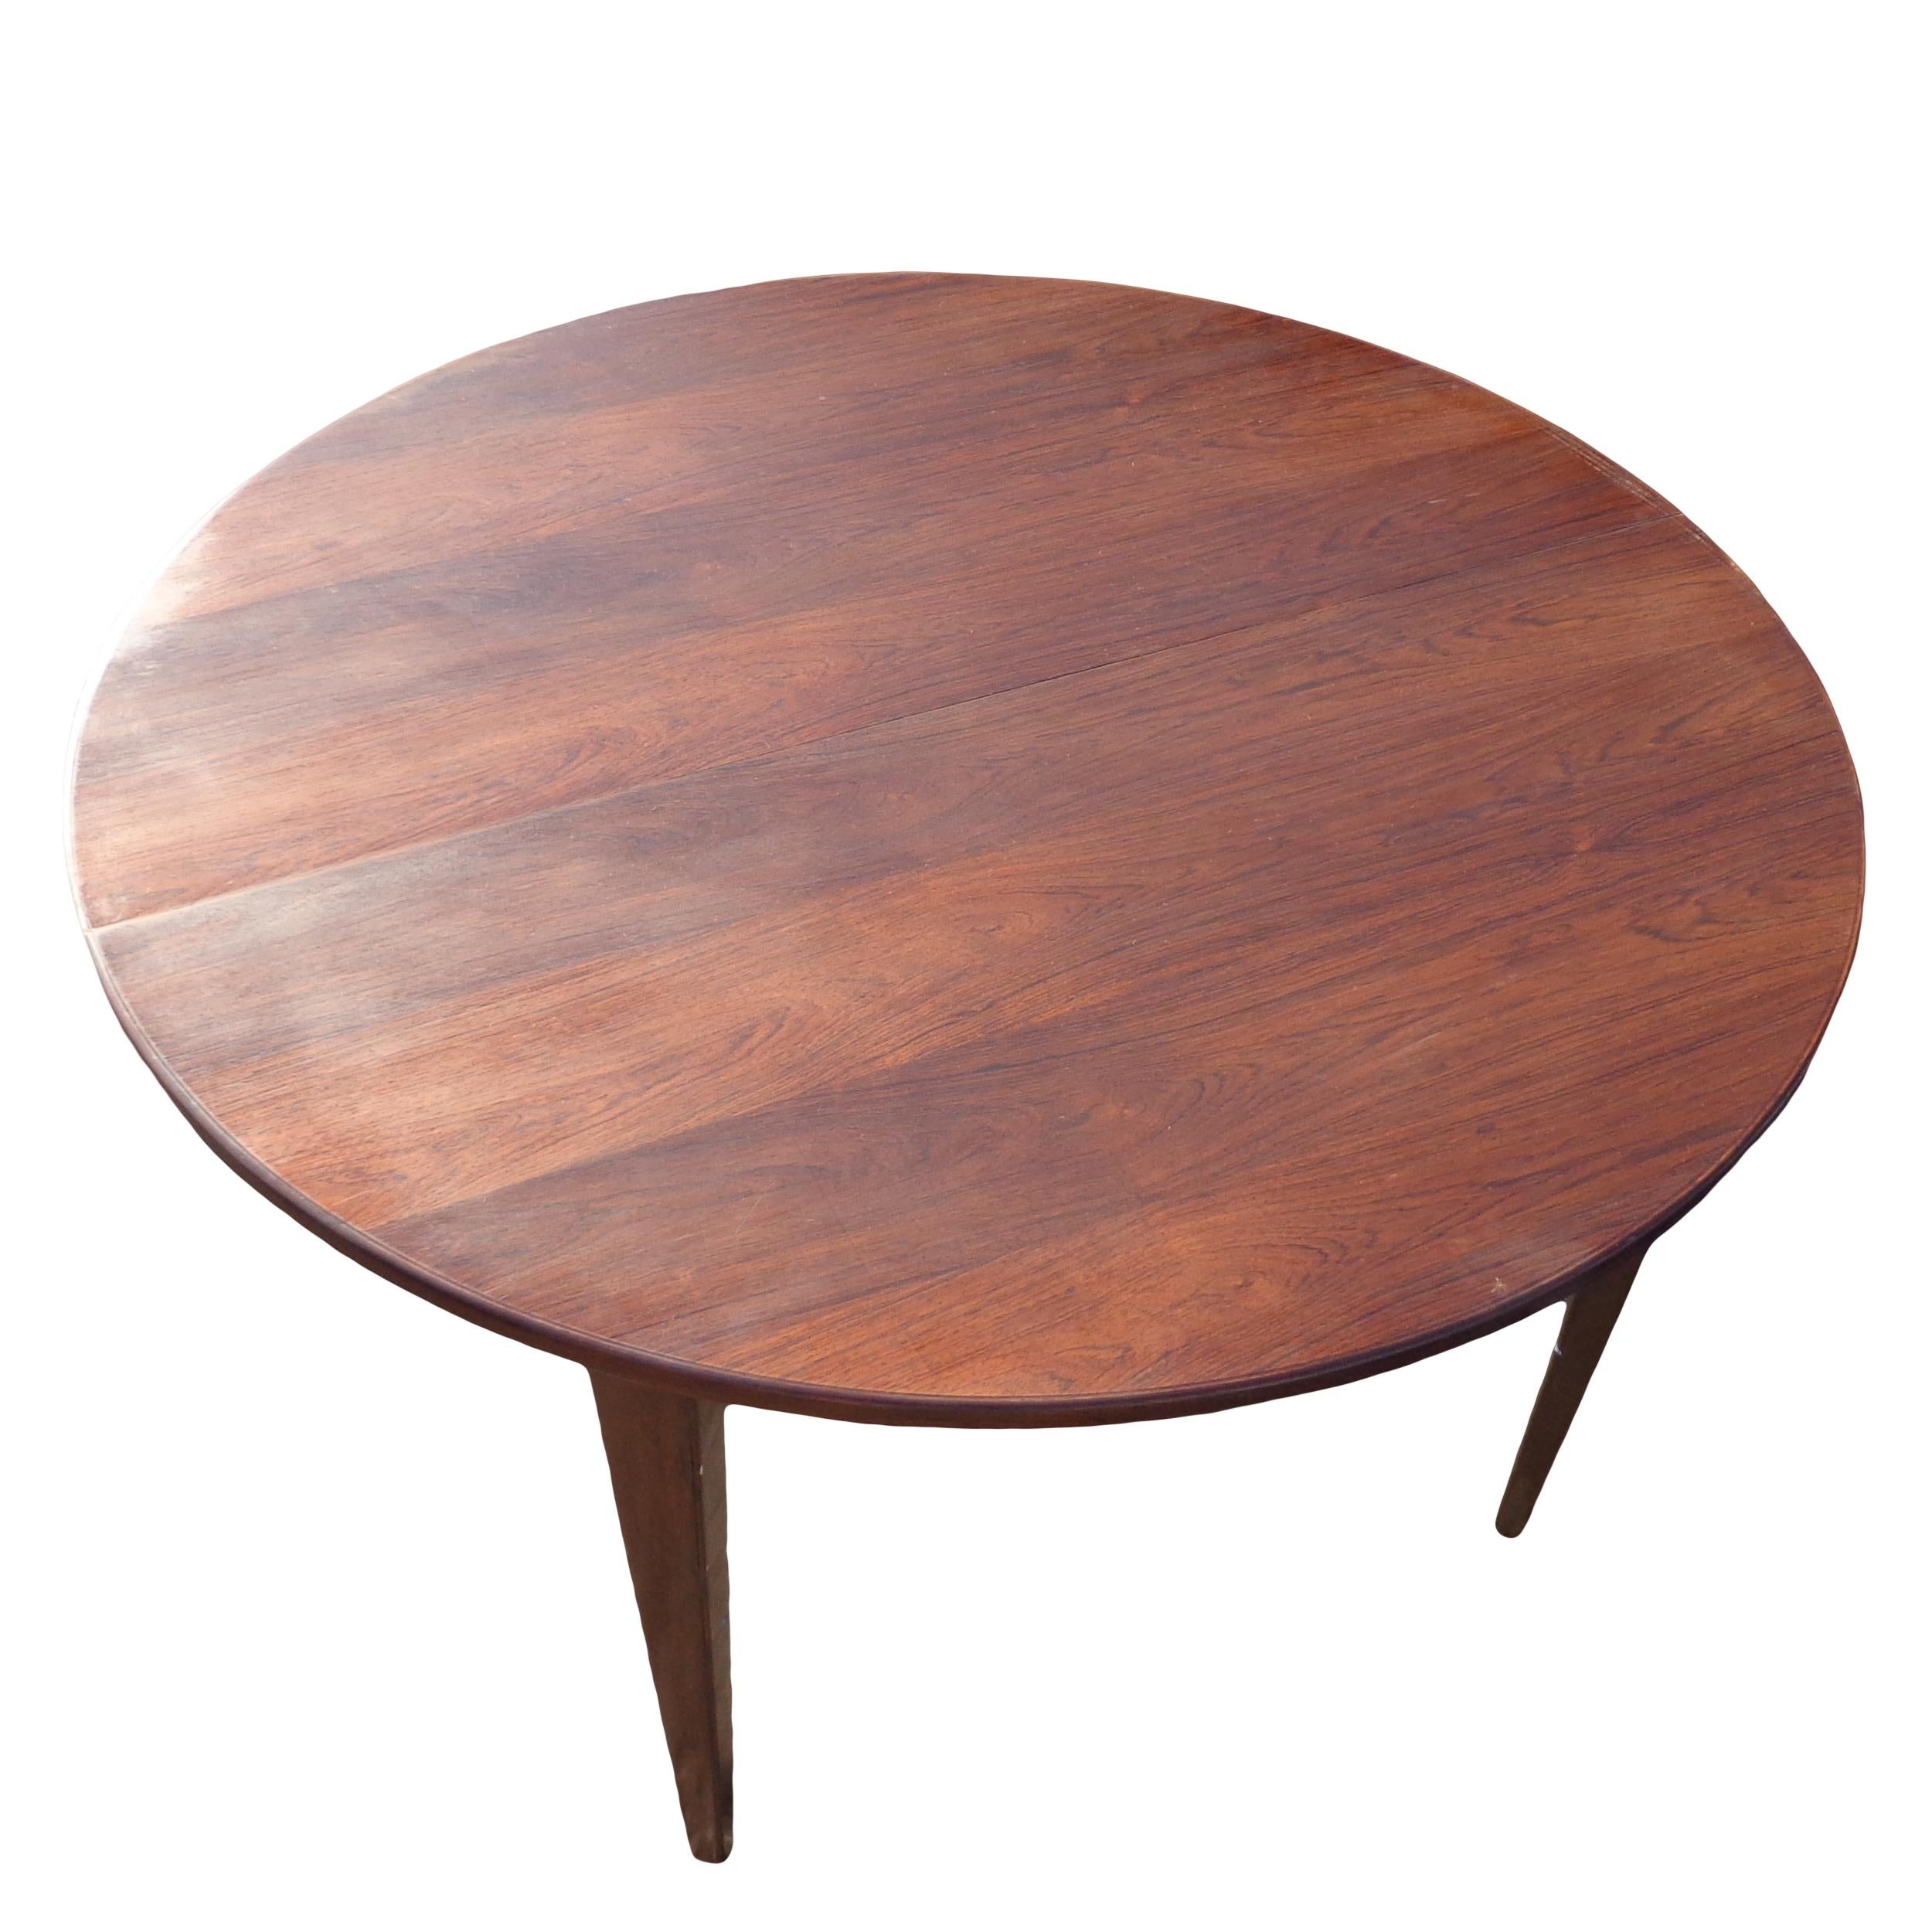 Table ronde danoise en bois de rose

Attribuée à Hans Olsen, cette table ronde mesure 47,25 ? de diamètre et présente un riche grain de bois de rose.
 